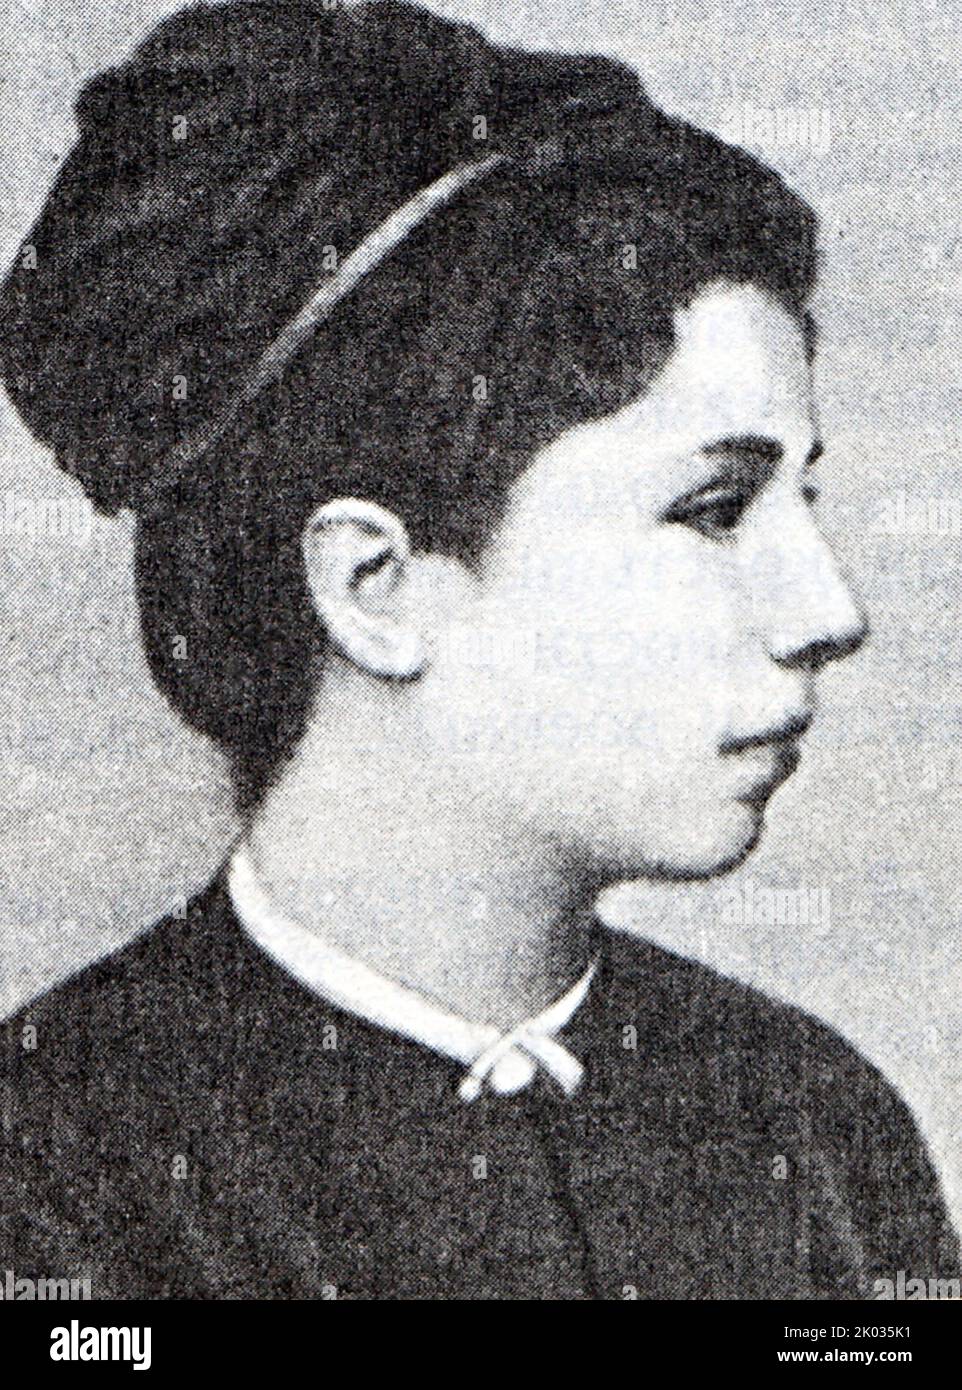 Sophia Lvovna Perovskaya (1853 - 1881) Imperio ruso revolucionario y miembro de la organización revolucionaria Narodnaya Volya. Ayudó a orquestar el asesinato de Alejandro II de Rusia, por el cual fue ejecutada por ahorcamiento. Foto de stock